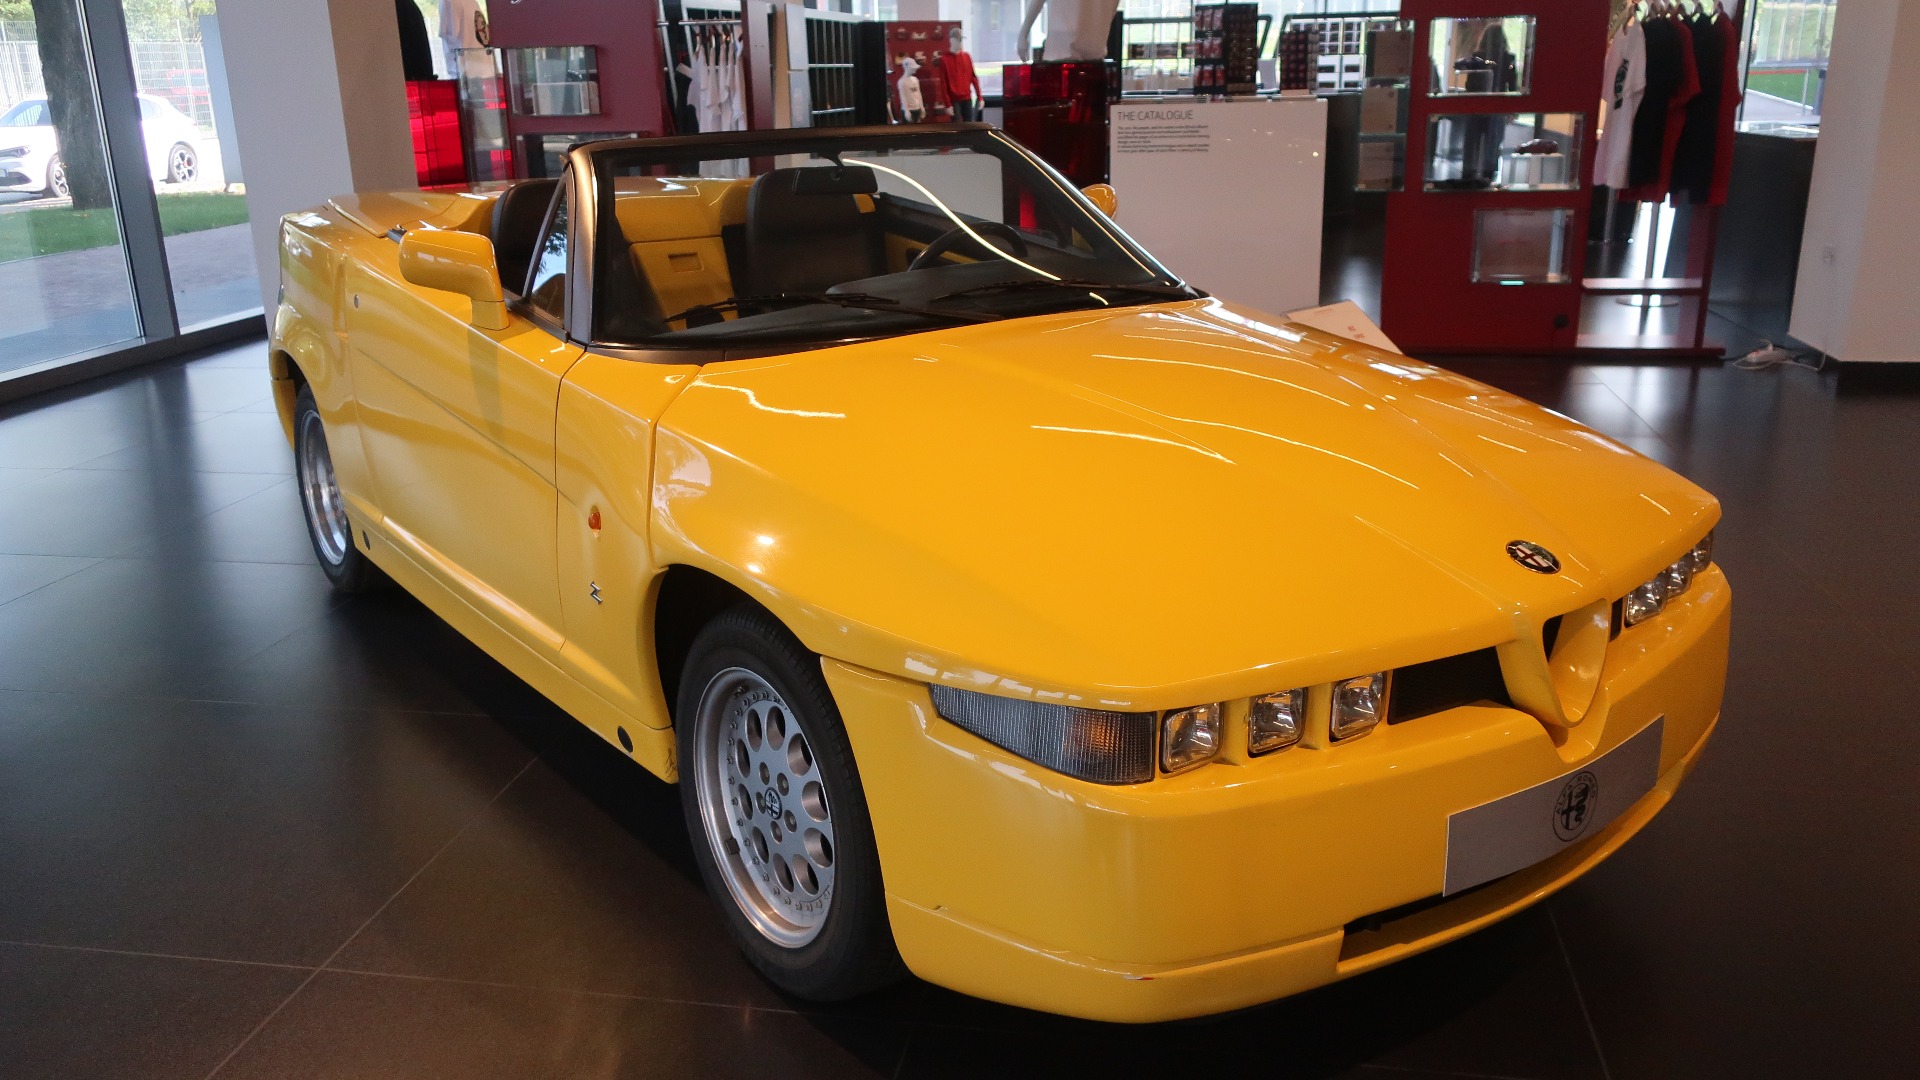 Den første bilen som møter en i inngangshallen er denne nydelige Alfa Romeo RZ (Roadster Zagato), som ble laget i 284 eksemplarer fra 1992-94.